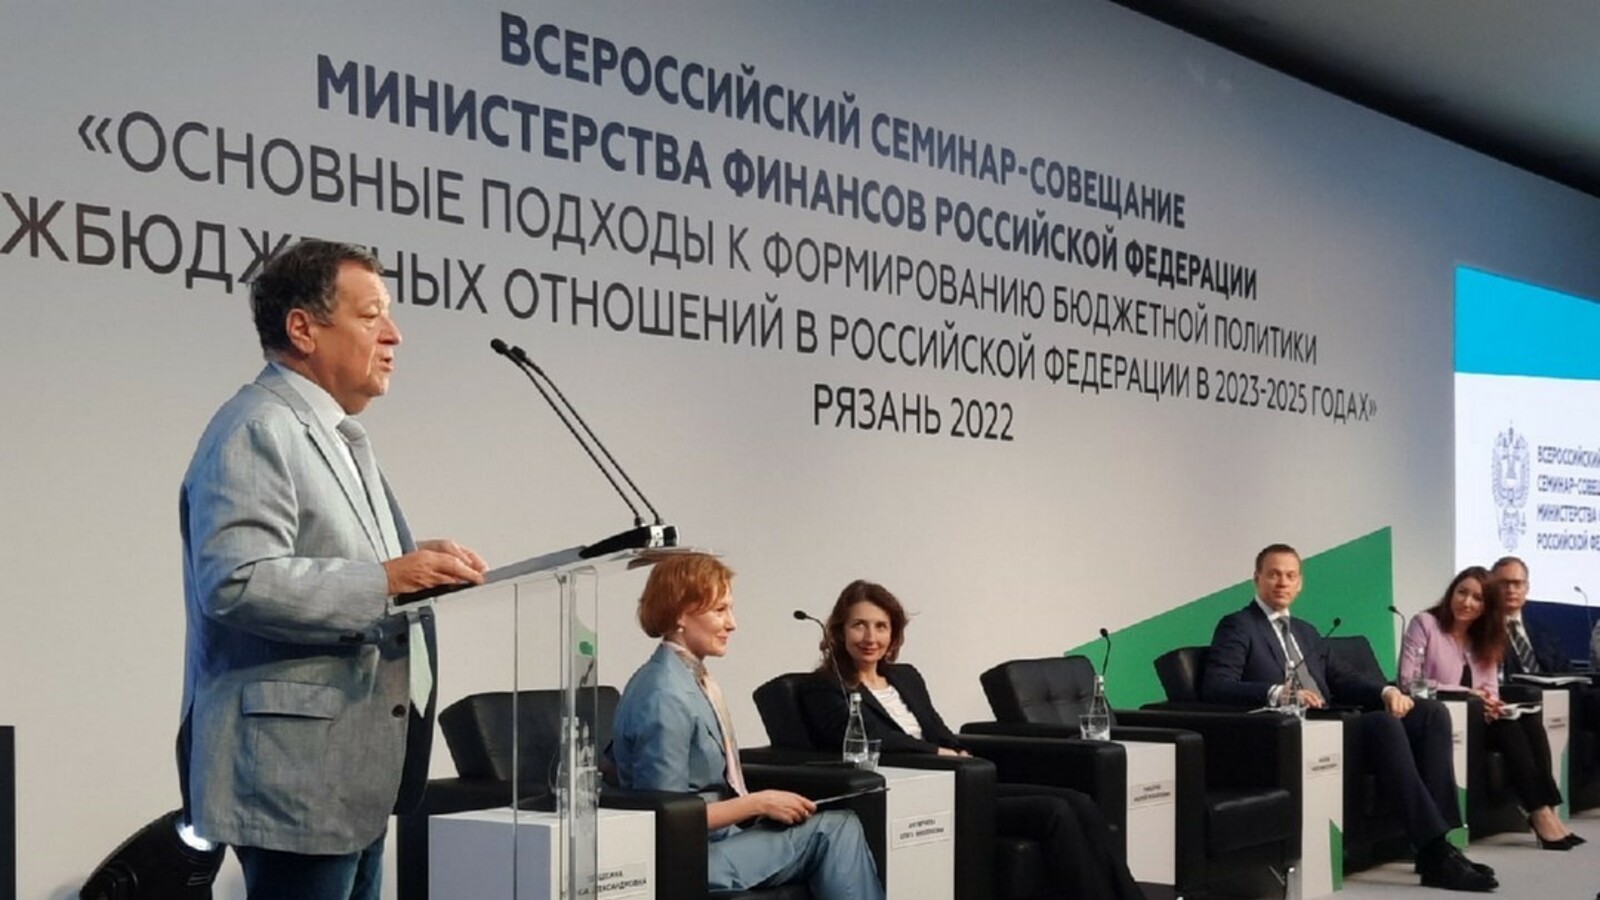 Минфин России провел Всероссийский семинар-совещание для руководителей финансовых органов субъектов РФ